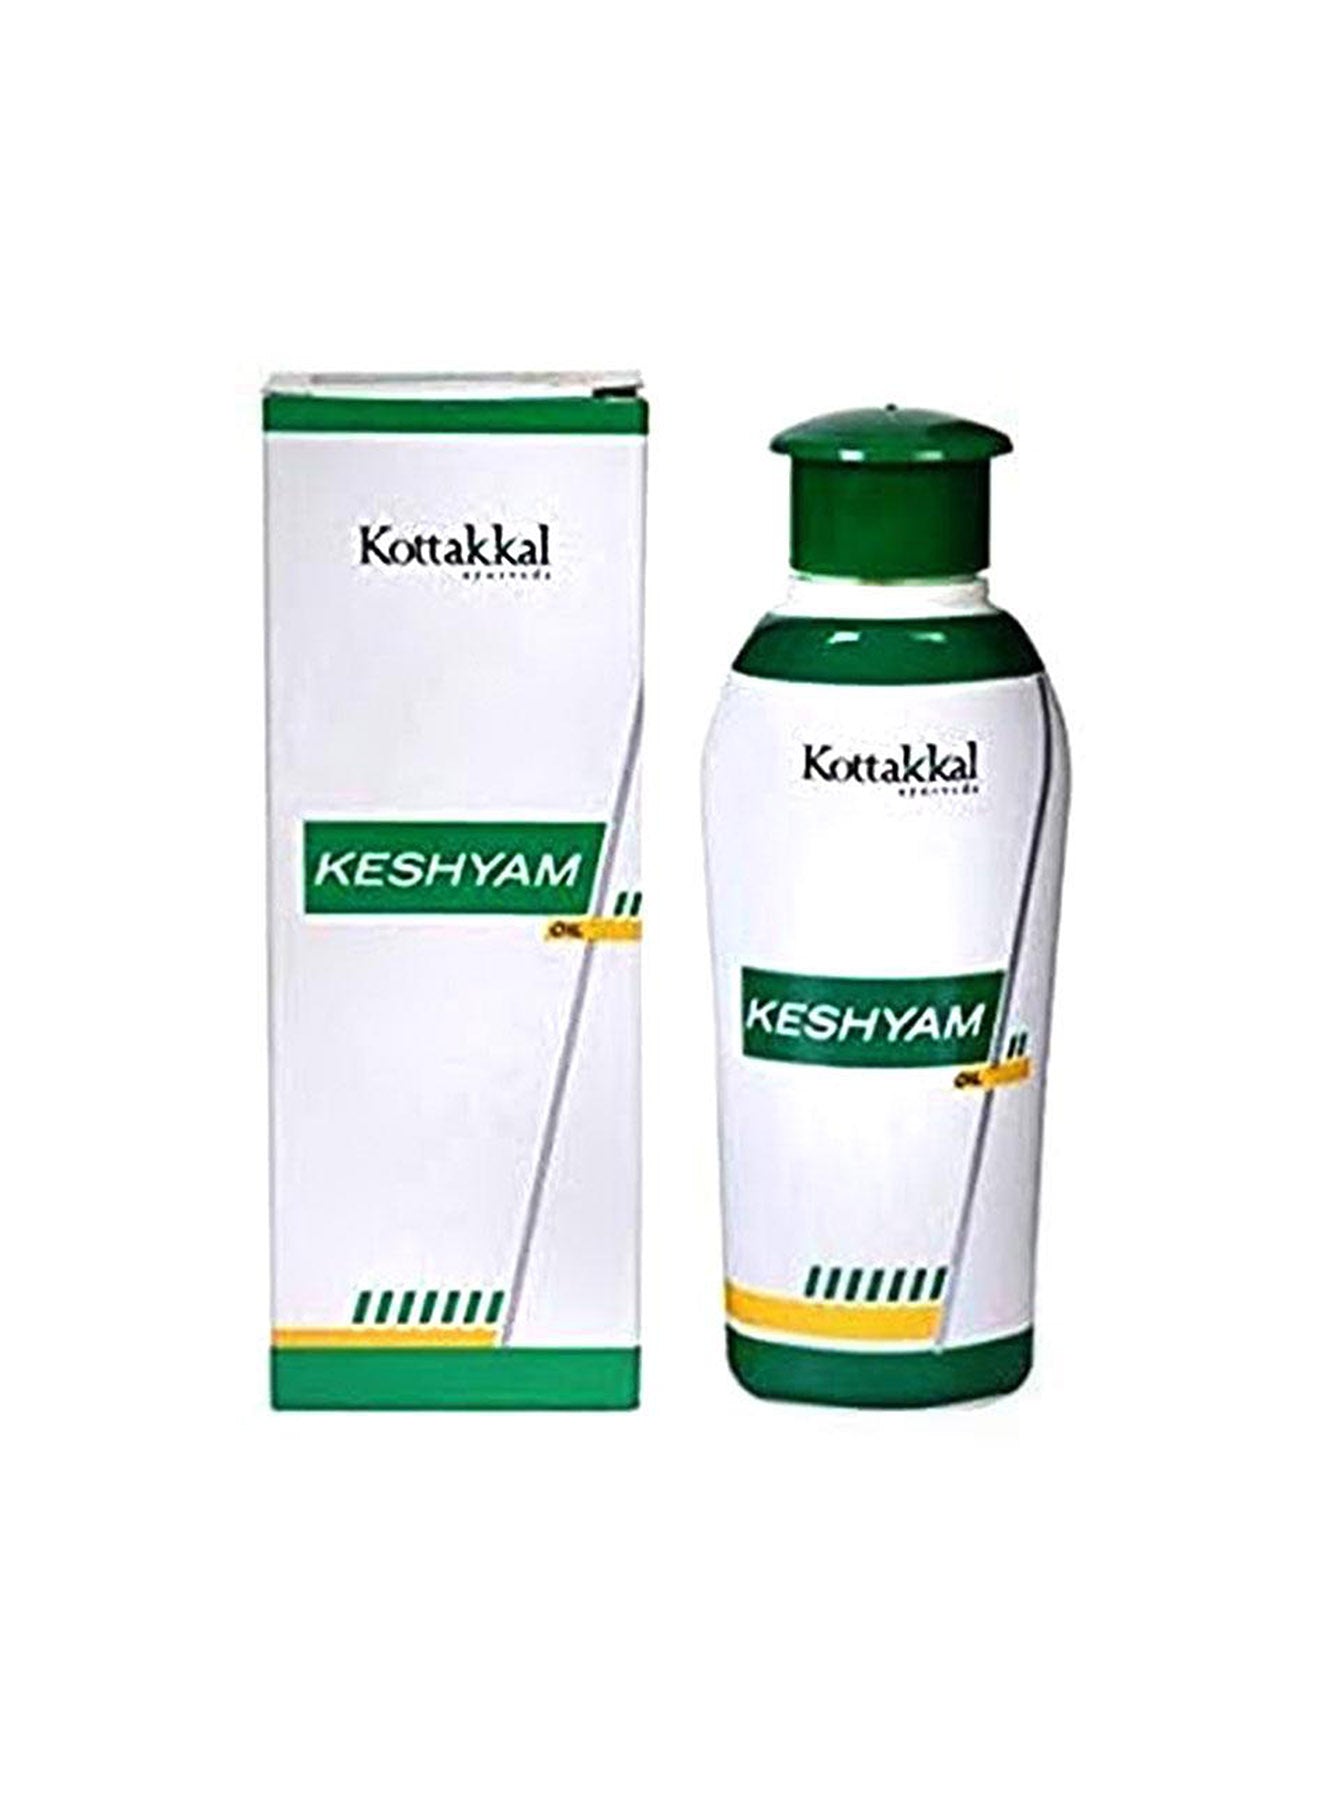 Kottakkal Ayurveda Keshyam Oil 100 ml Value Pack of 12 